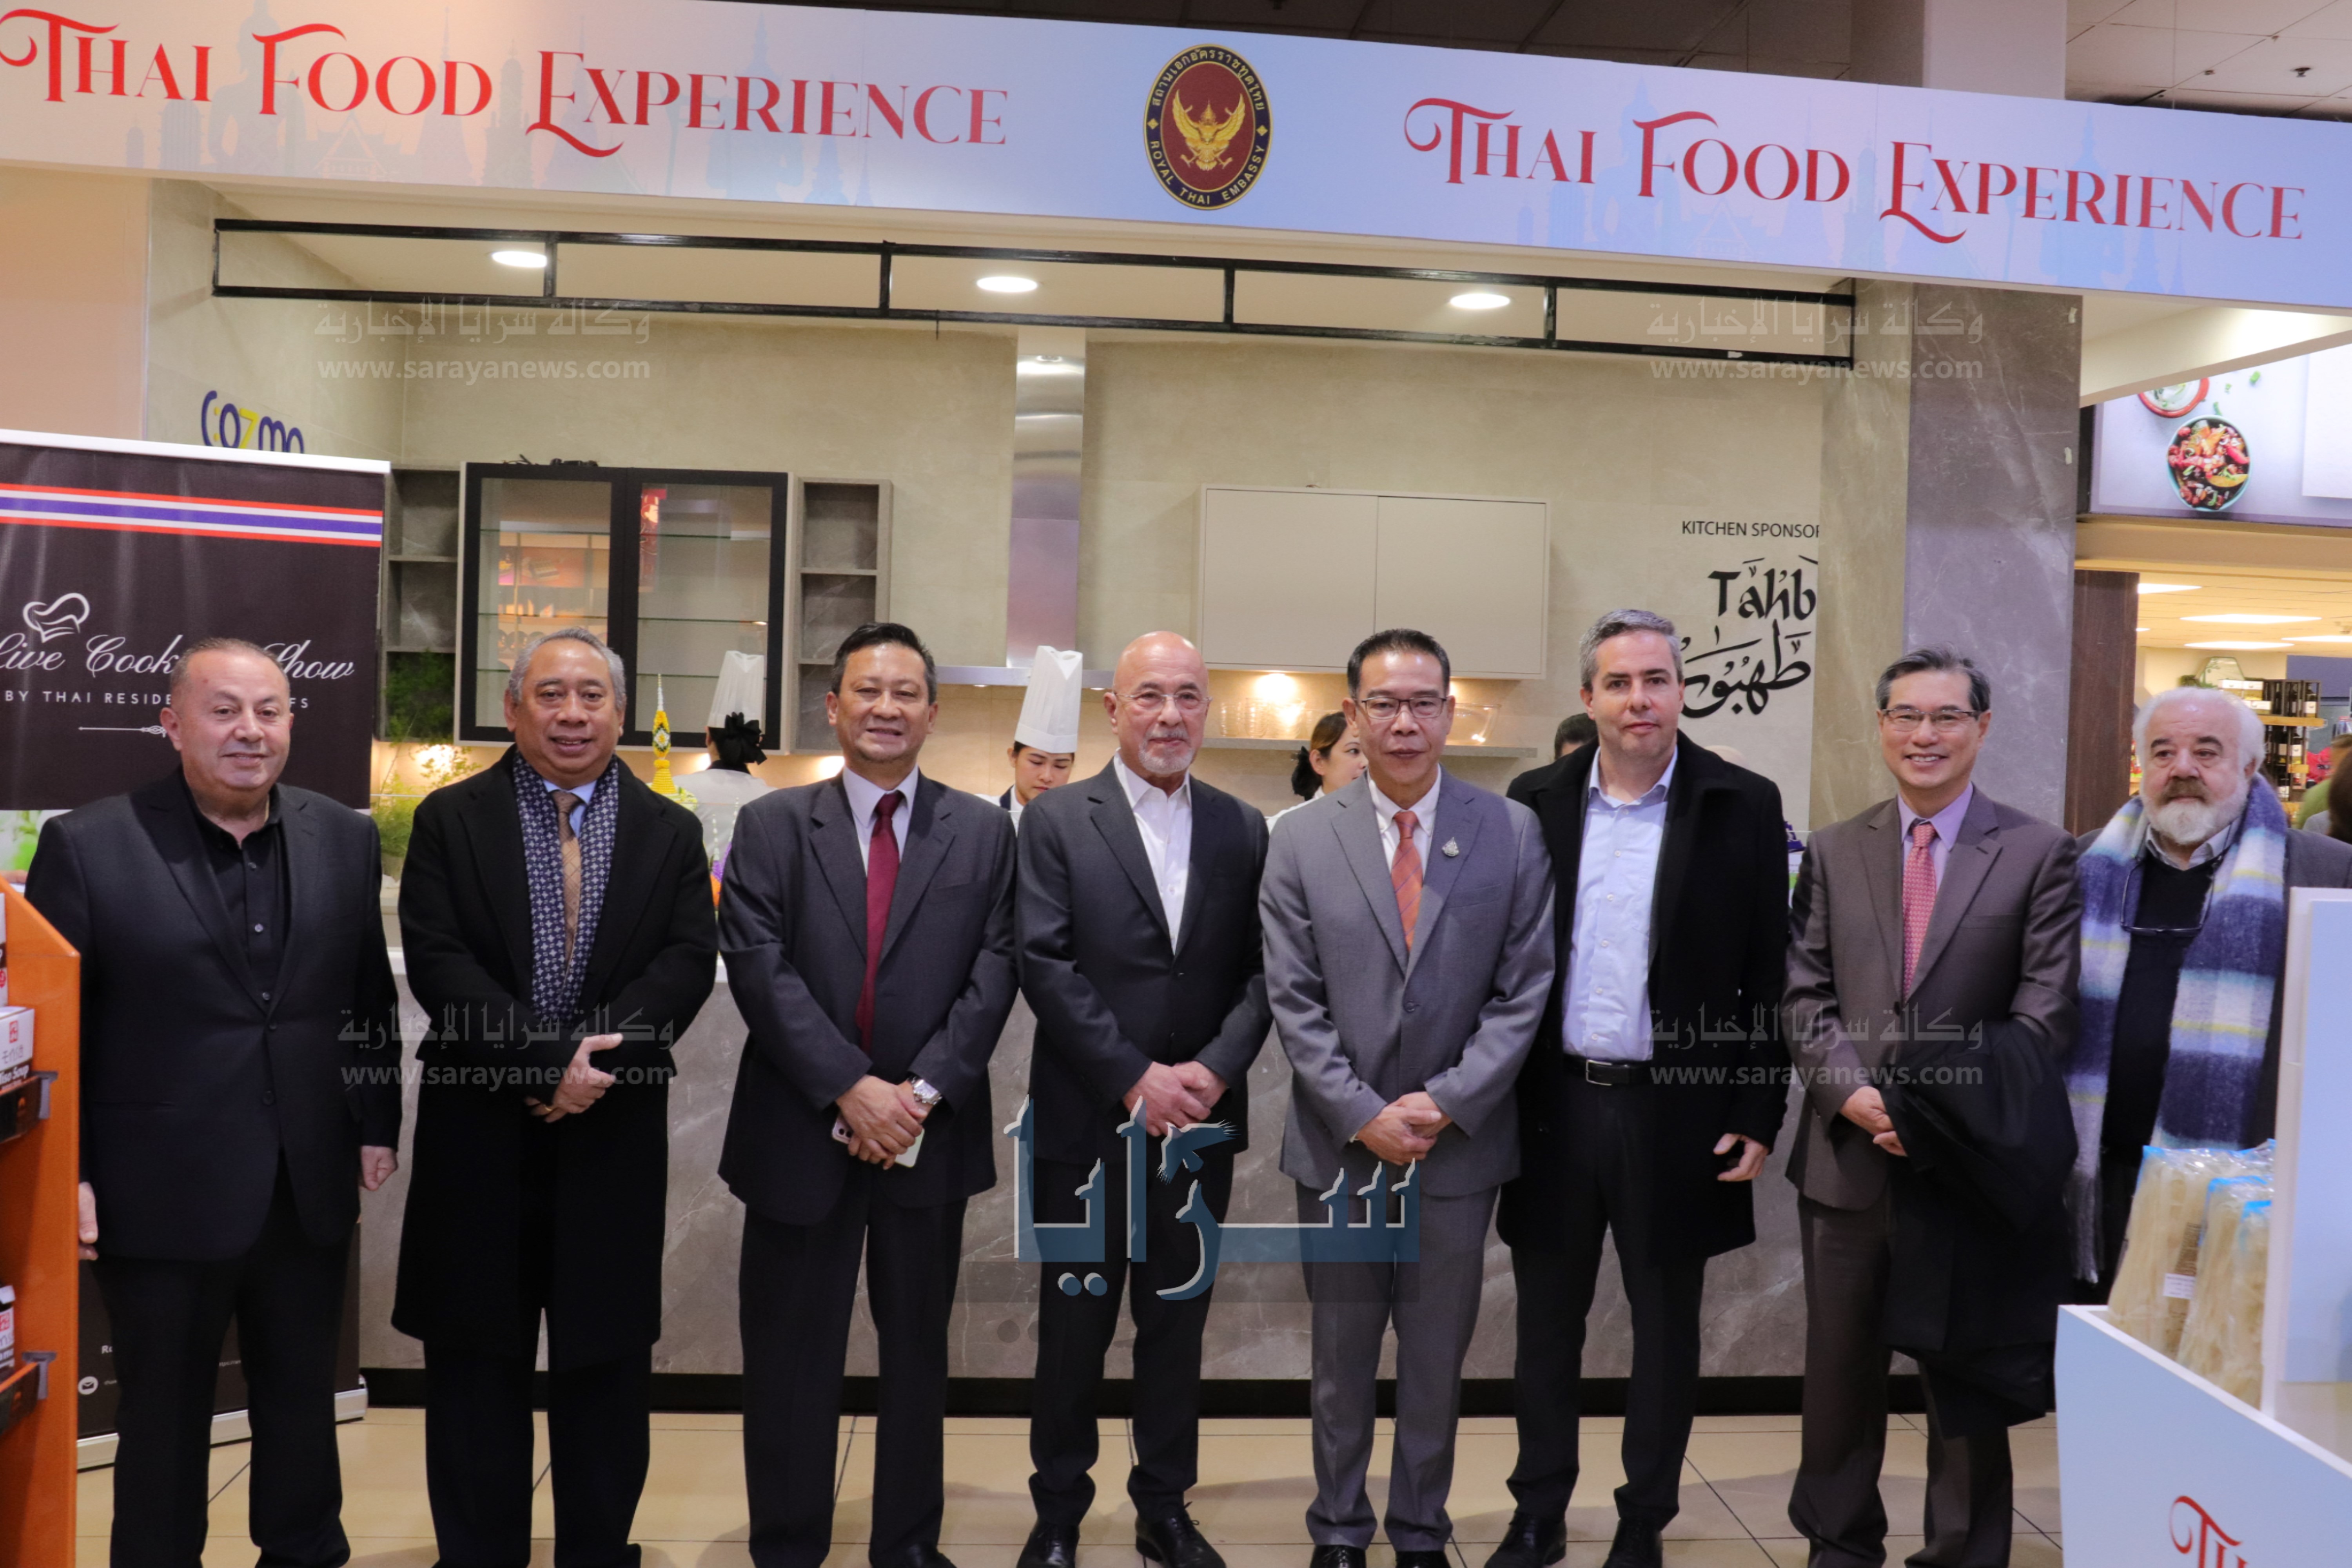 بالصور  ..  السفير التايلندي في عمّان يفتتح مهرجان الطعام والطبخ التايلندي في كوزمو السابع 